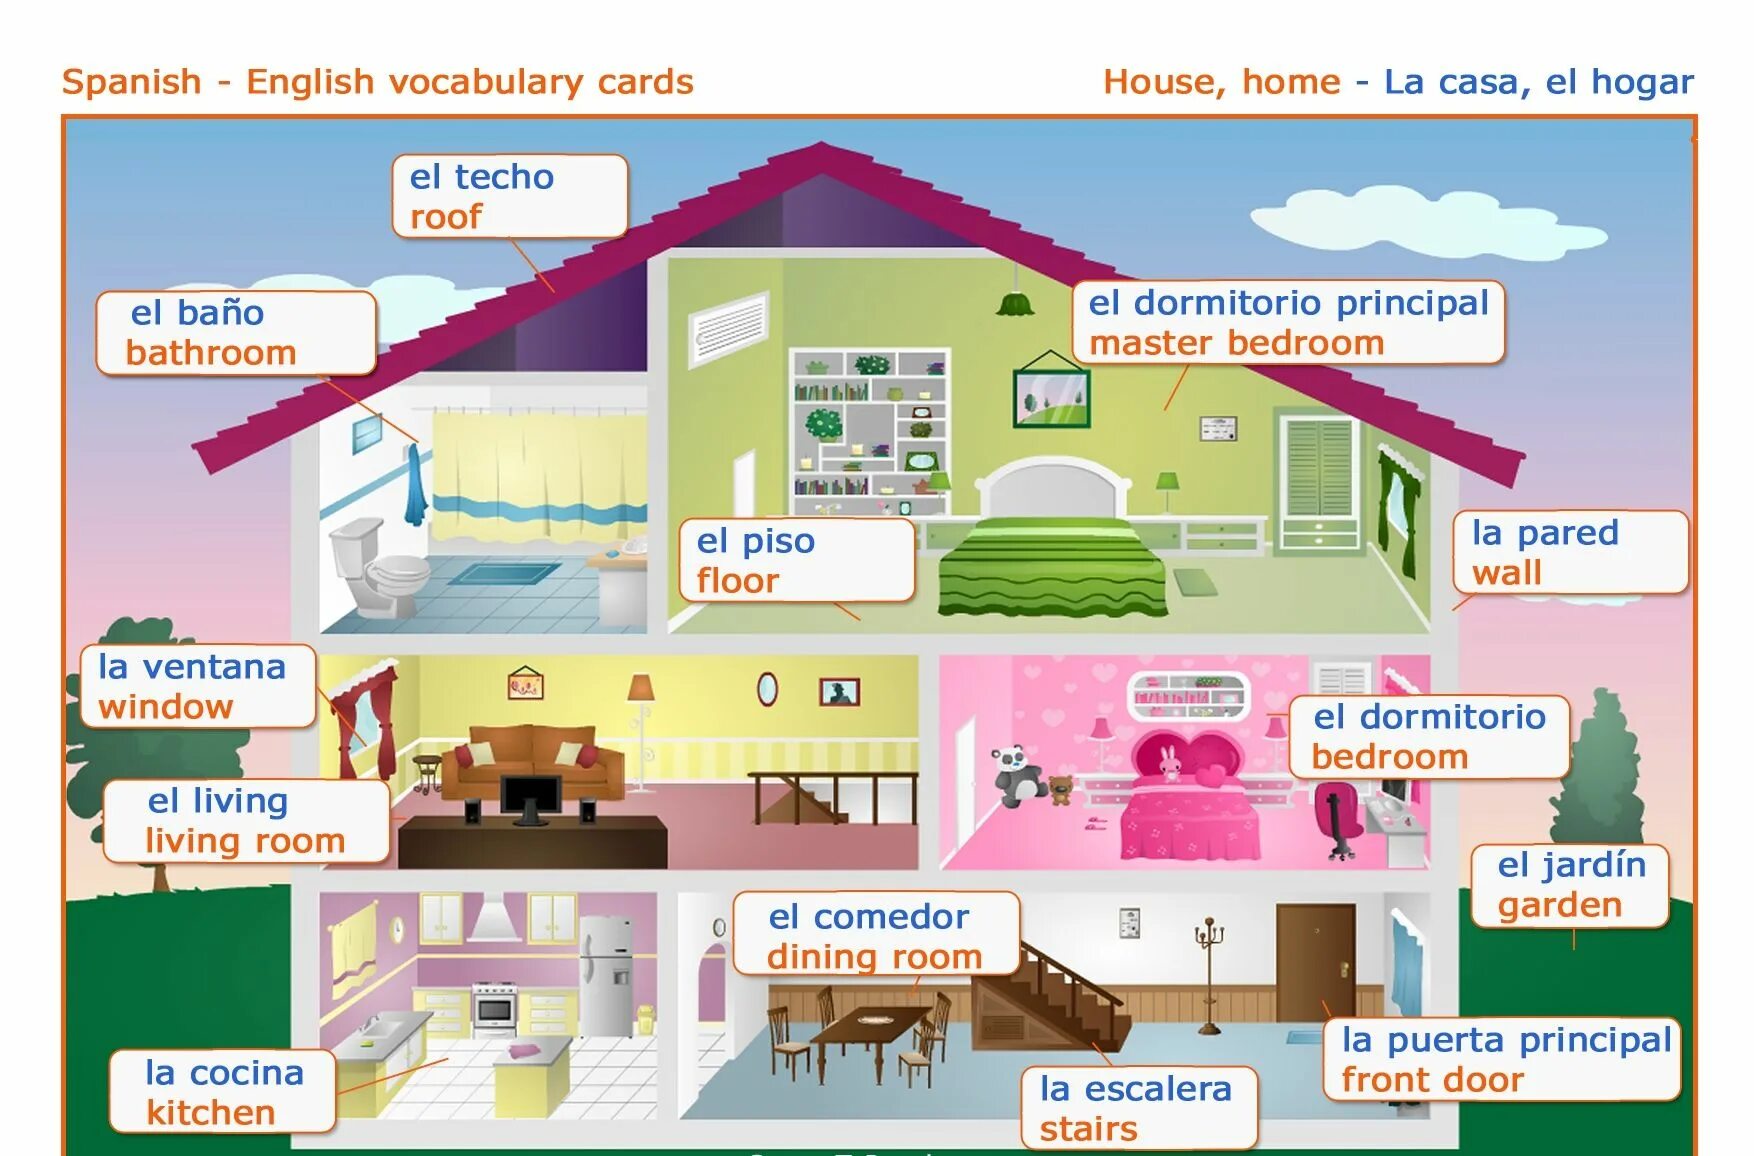 Тема мой дом на английском. Комната мебель испанский язык. Комнаты в доме на испанском языке. Домик с комнатами по английскому языку. Название комнат на английском.